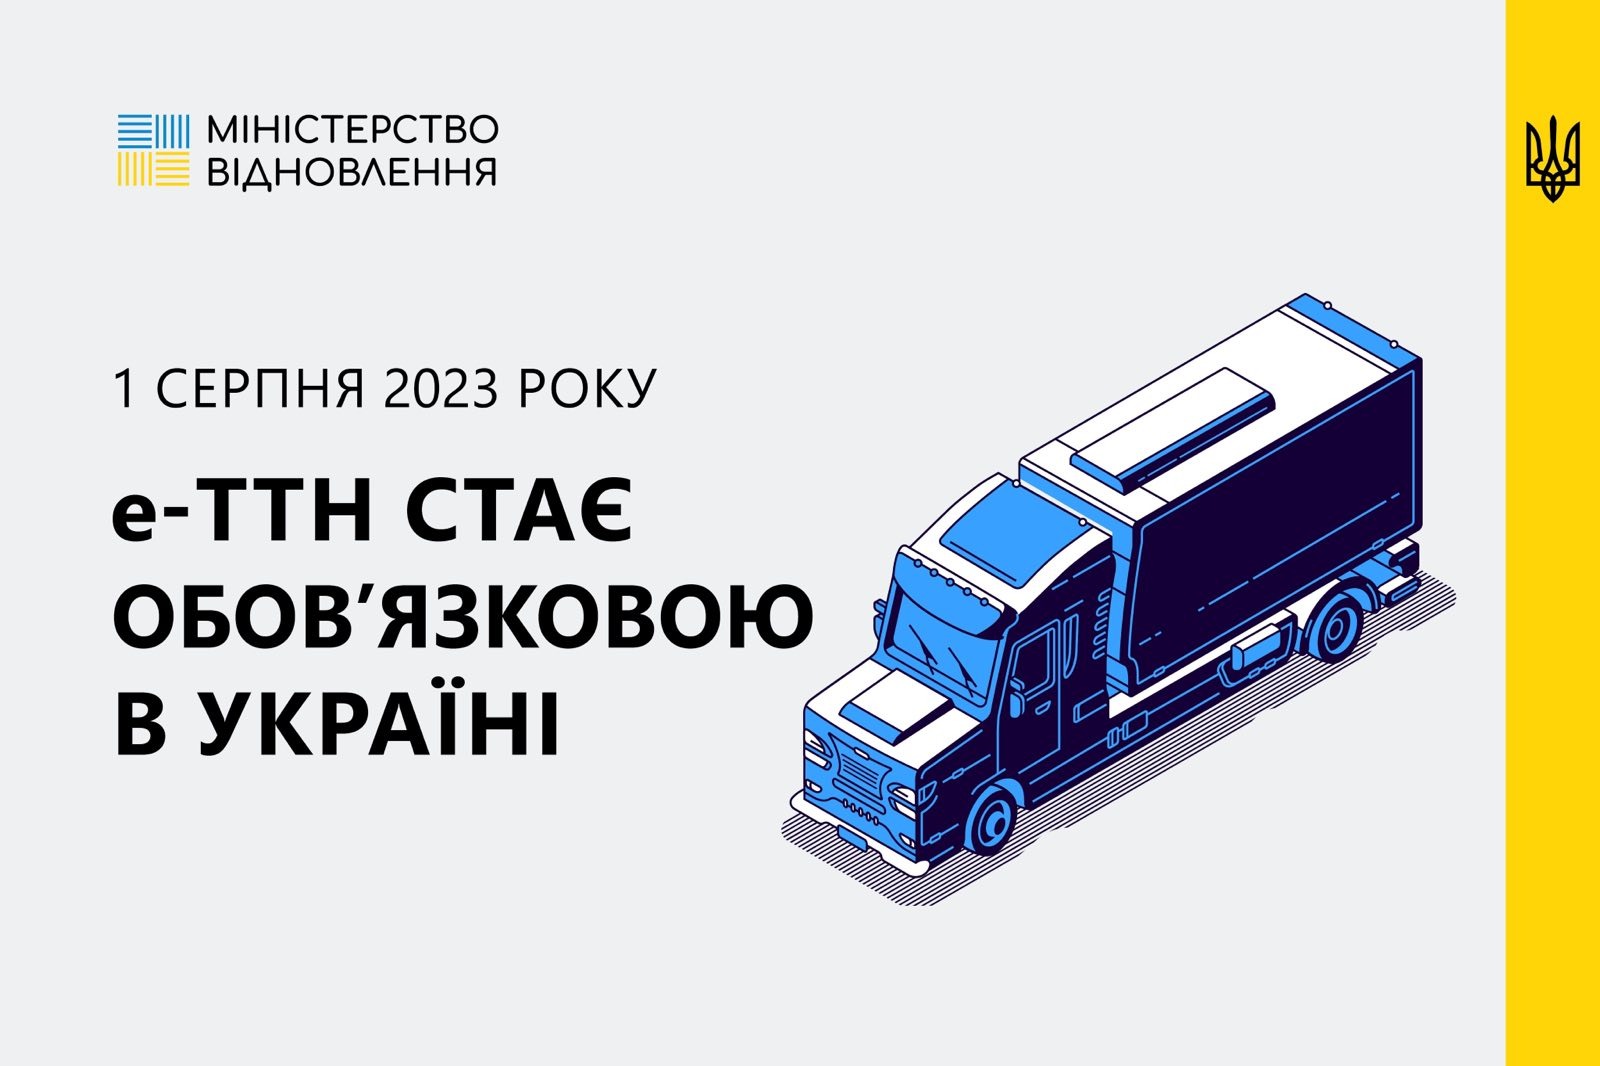 Электронная товарно-транспортная накладная (е-ТТН) станет обязательной с 1 августа 2023 года